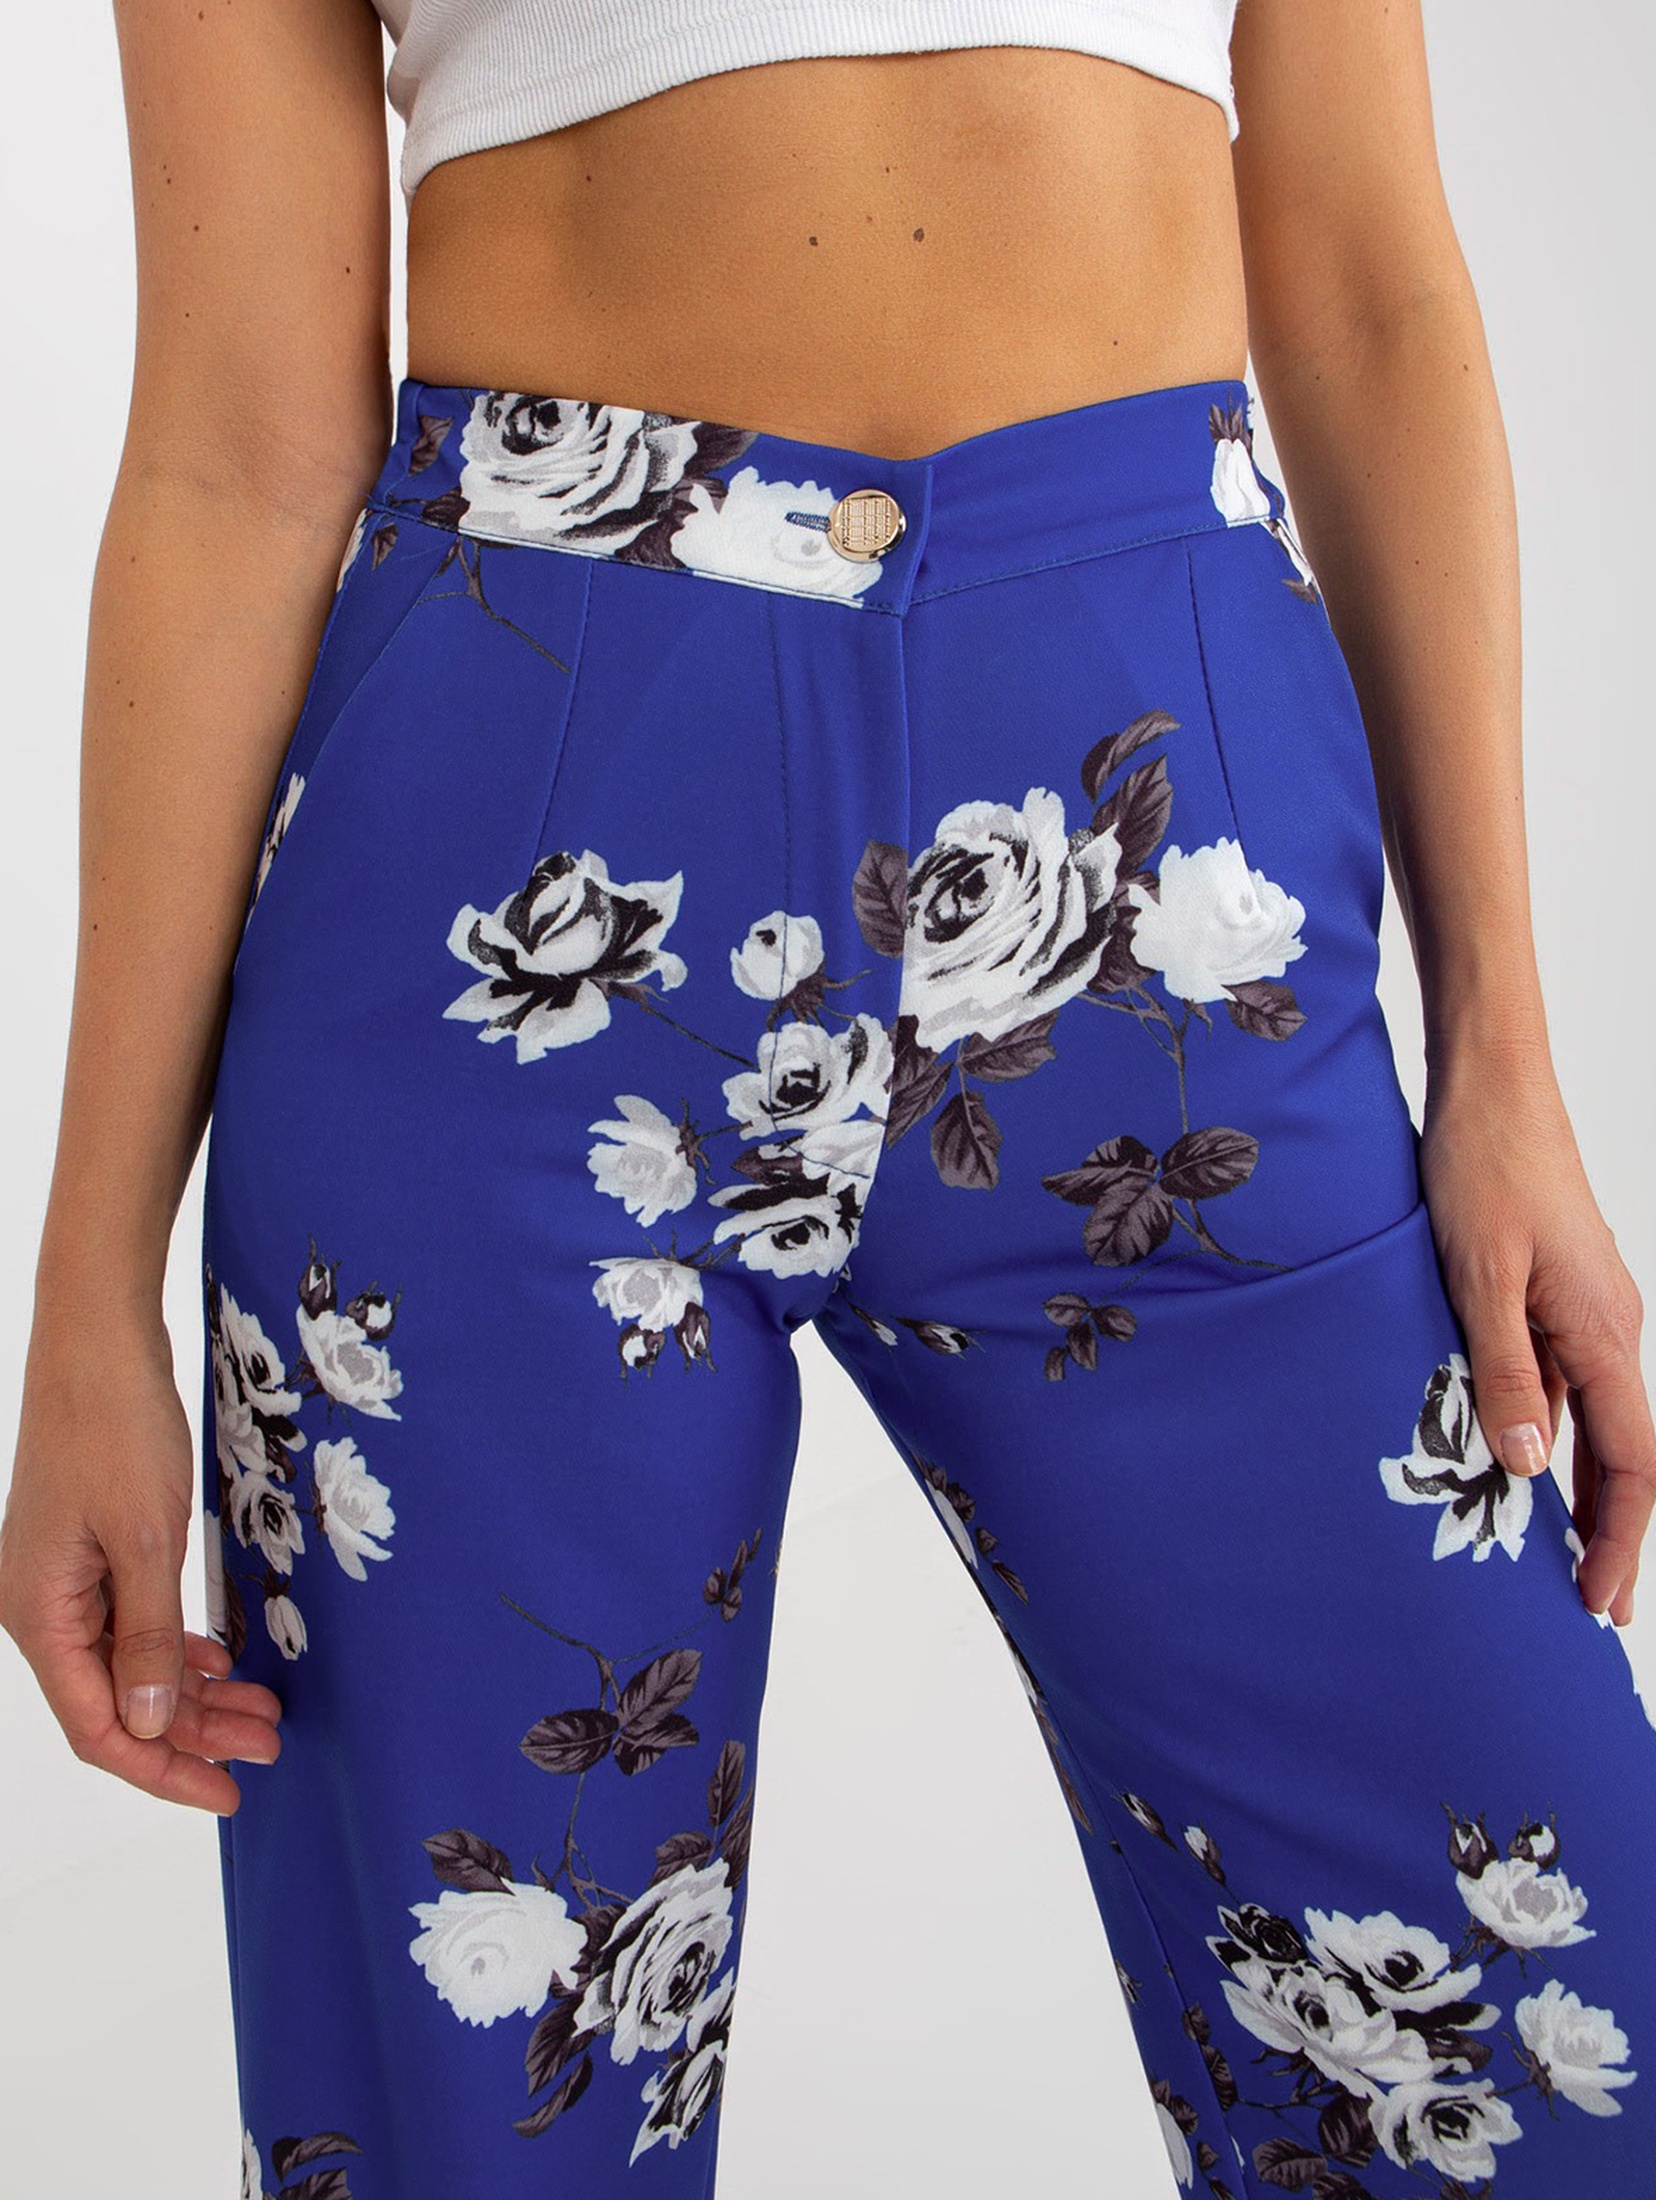 Kobaltowe
szerokie materiałowe spodnie w kwiaty
od garnituru